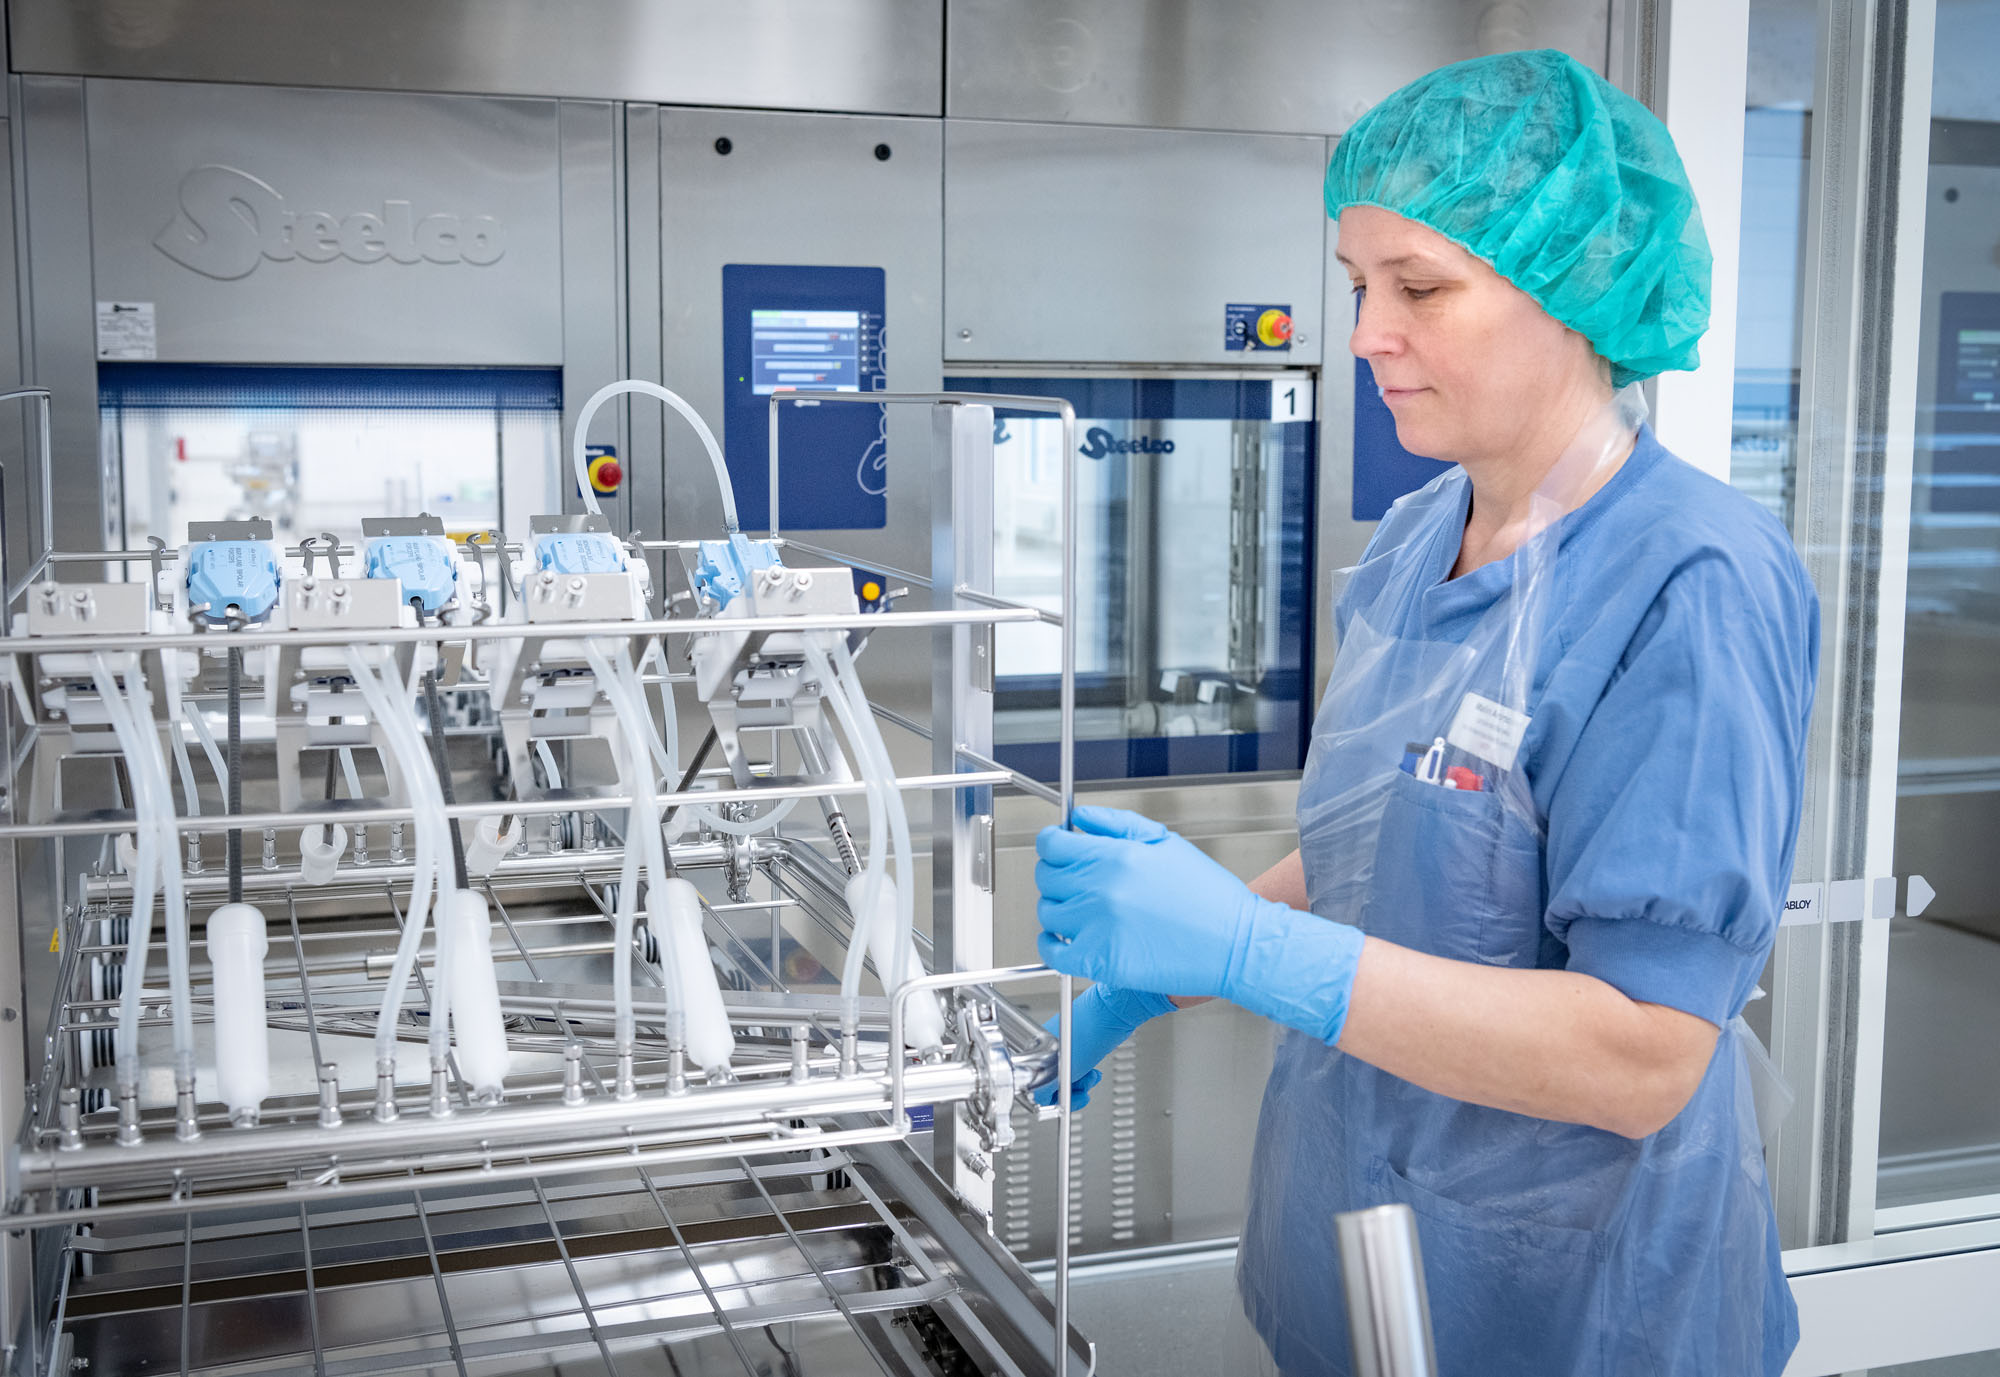 Sterilteknisk centrums nya rymliga lokaler täcker 2500 kvm på ett plan och ligger nära operationsavdelningarna för snabba och säkra leveranser av steriliserade operationsinstrument.